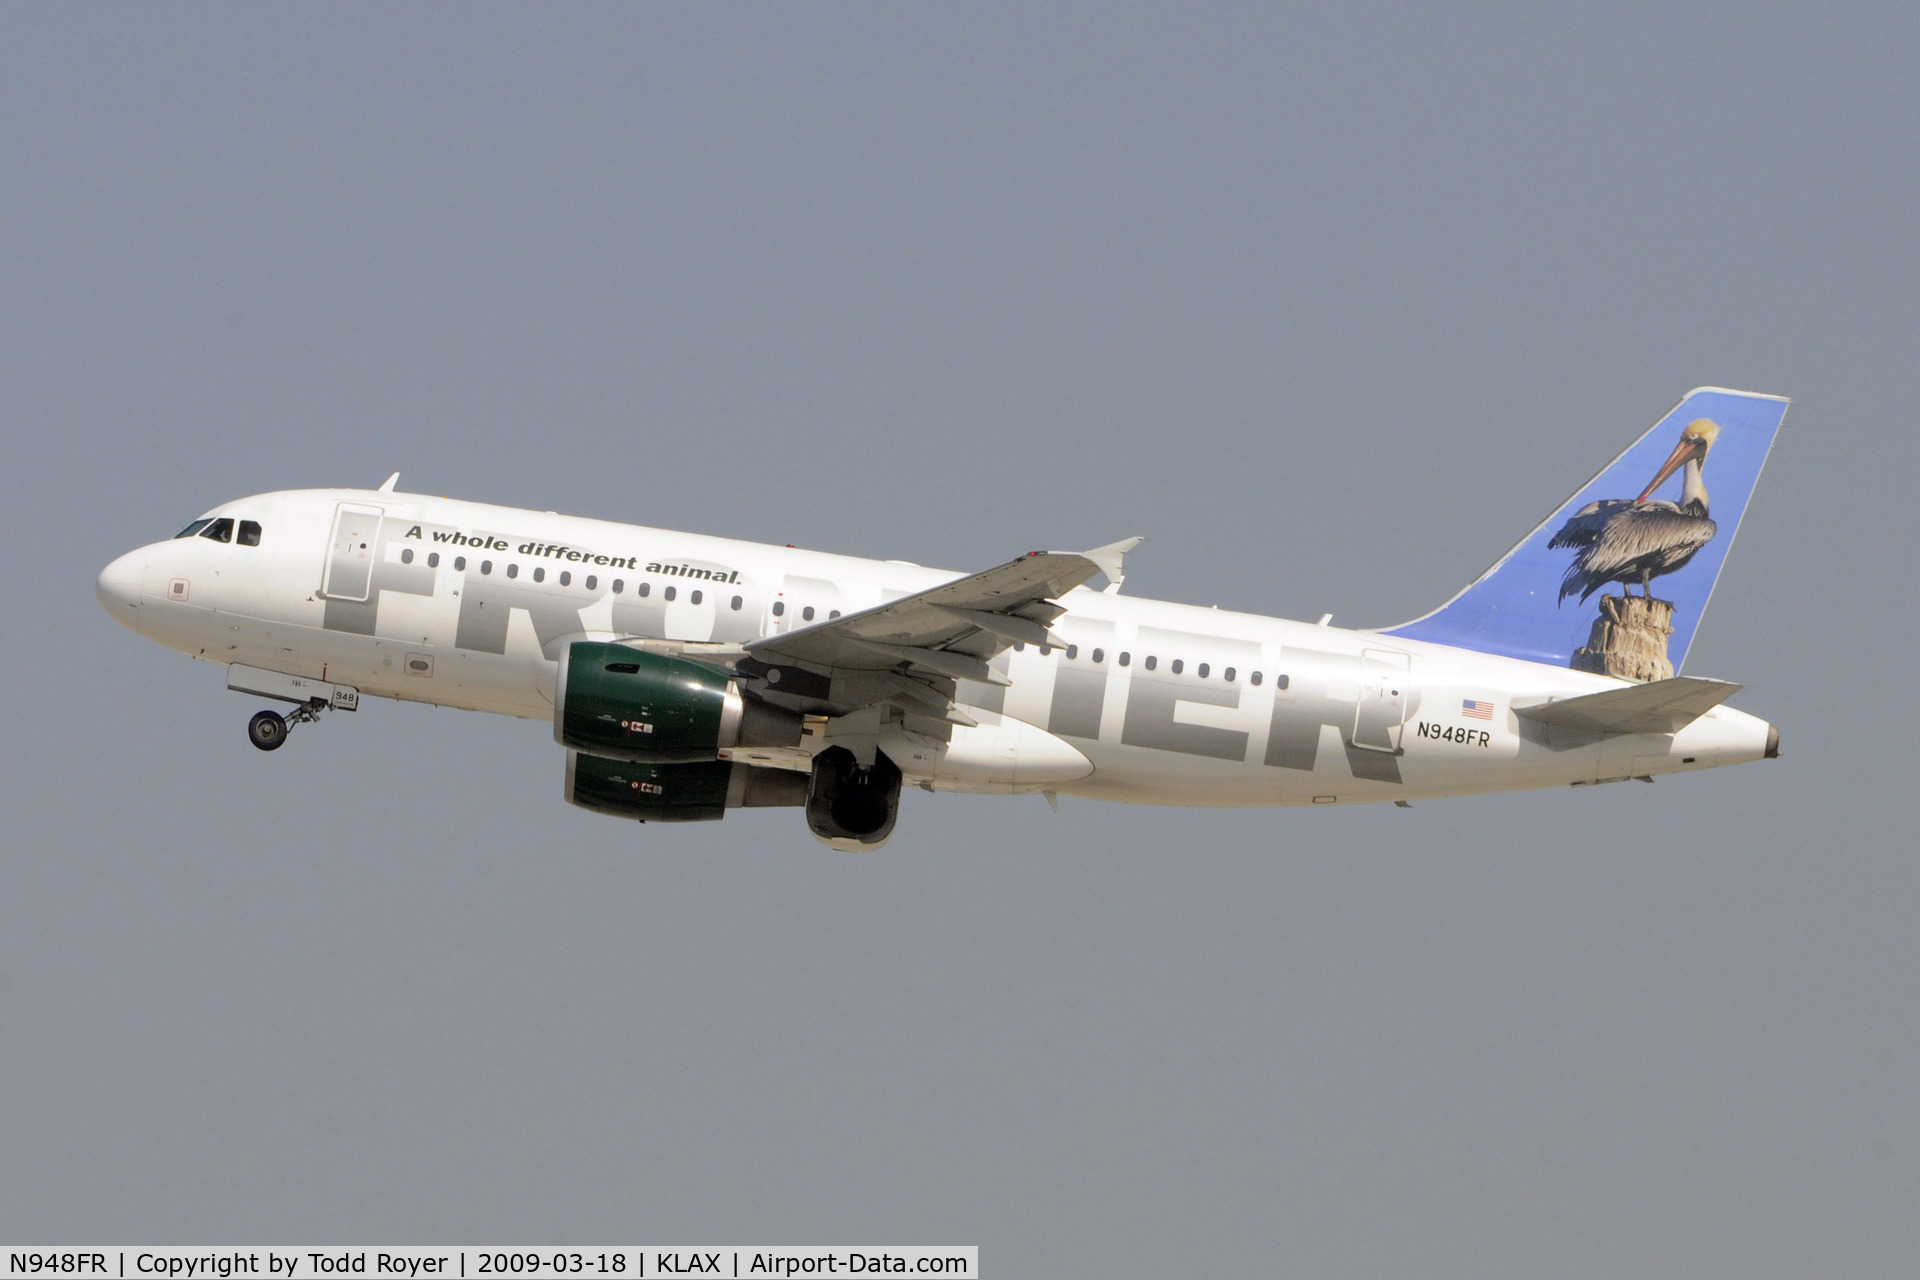 N948FR, 2006 Airbus A319-112 C/N 2836, Departing LAX on 25R